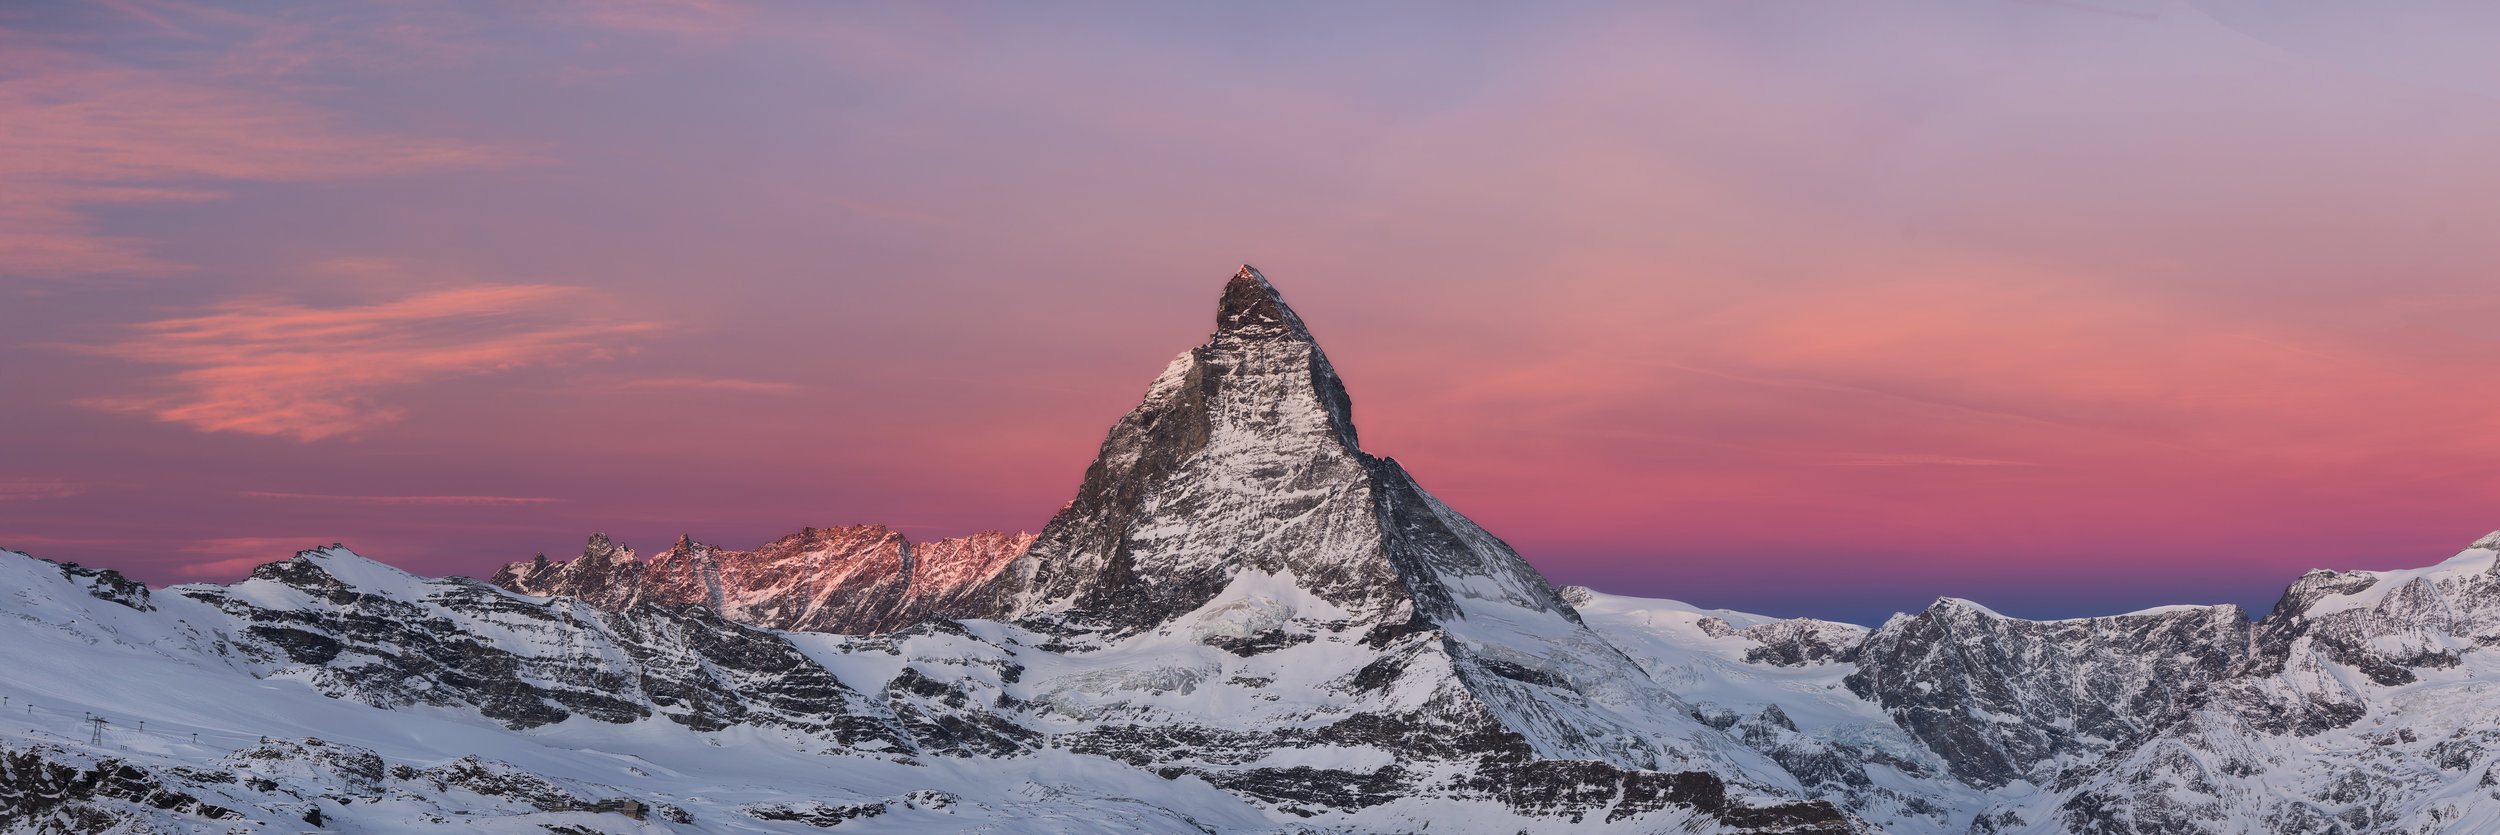 Matterhorn IV